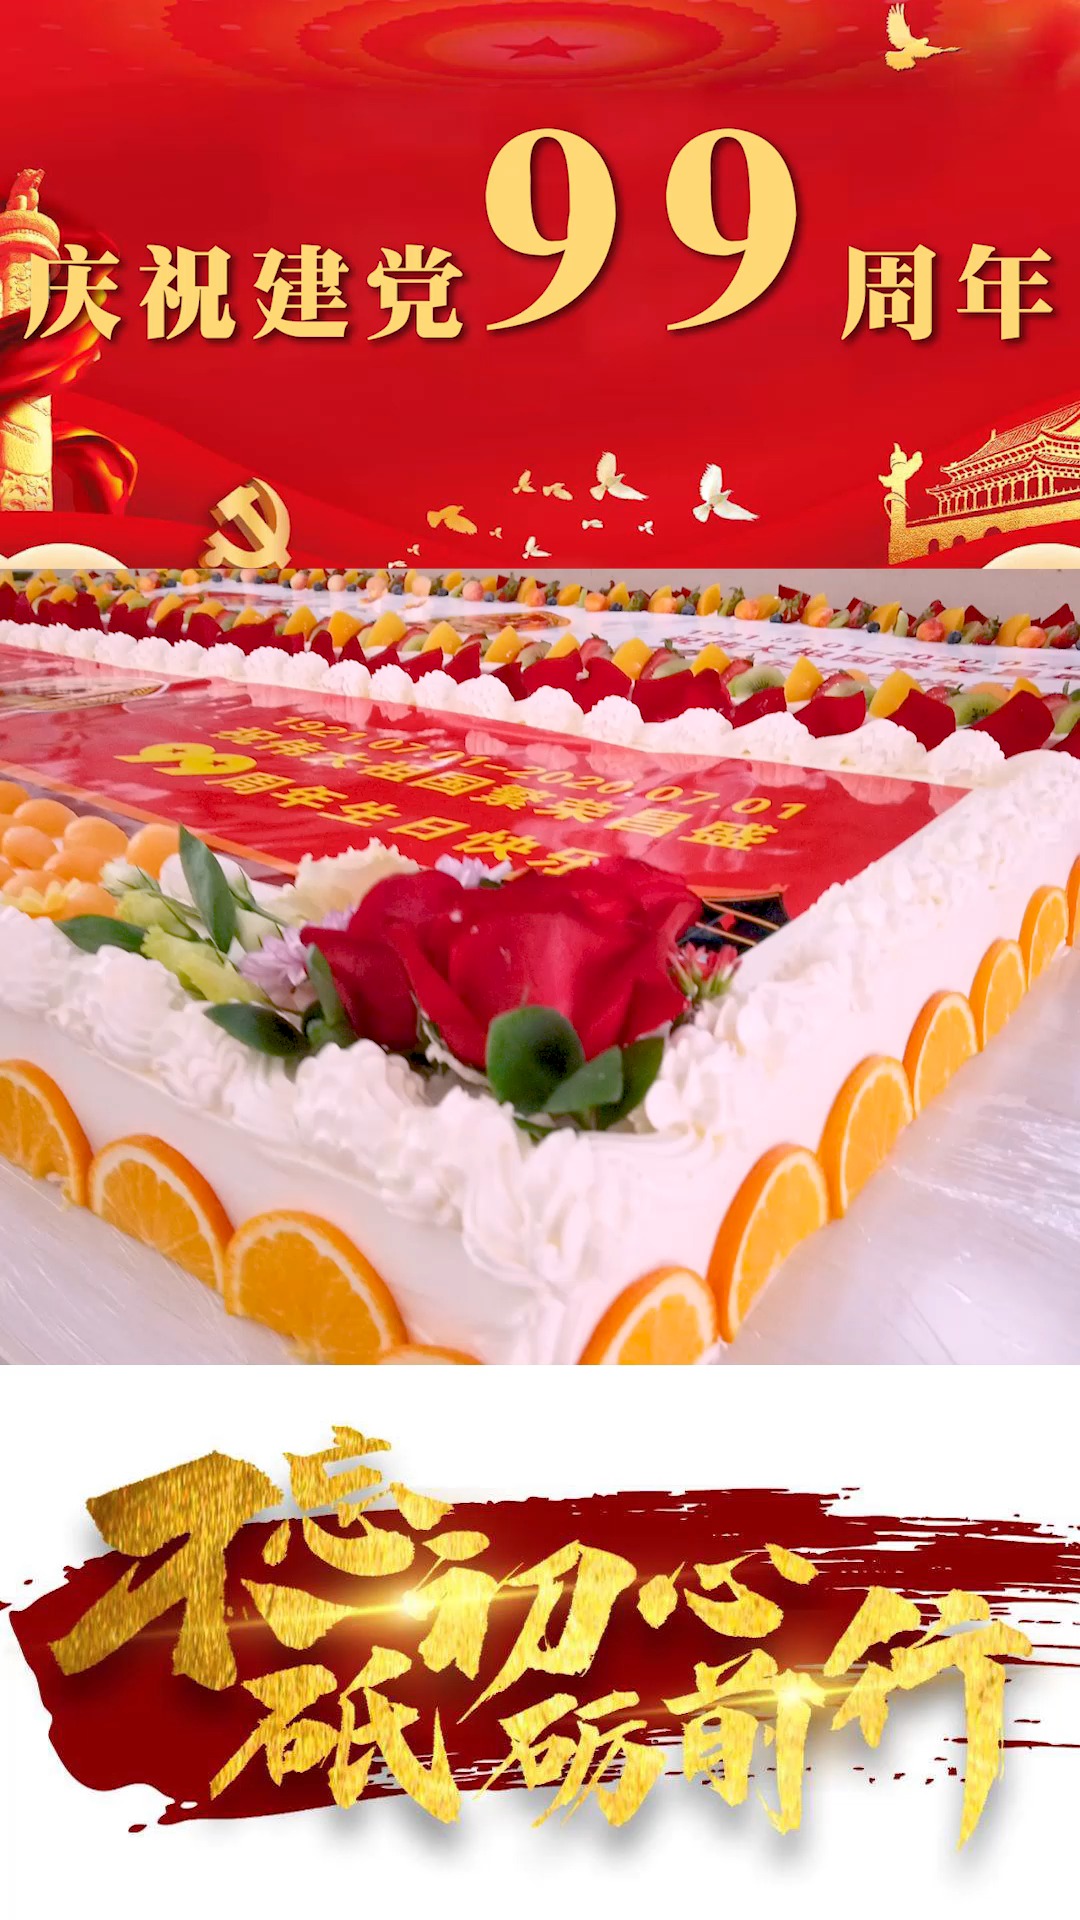 建党99周年 给党和祖国献上蛋糕,愿祖国繁荣昌盛!